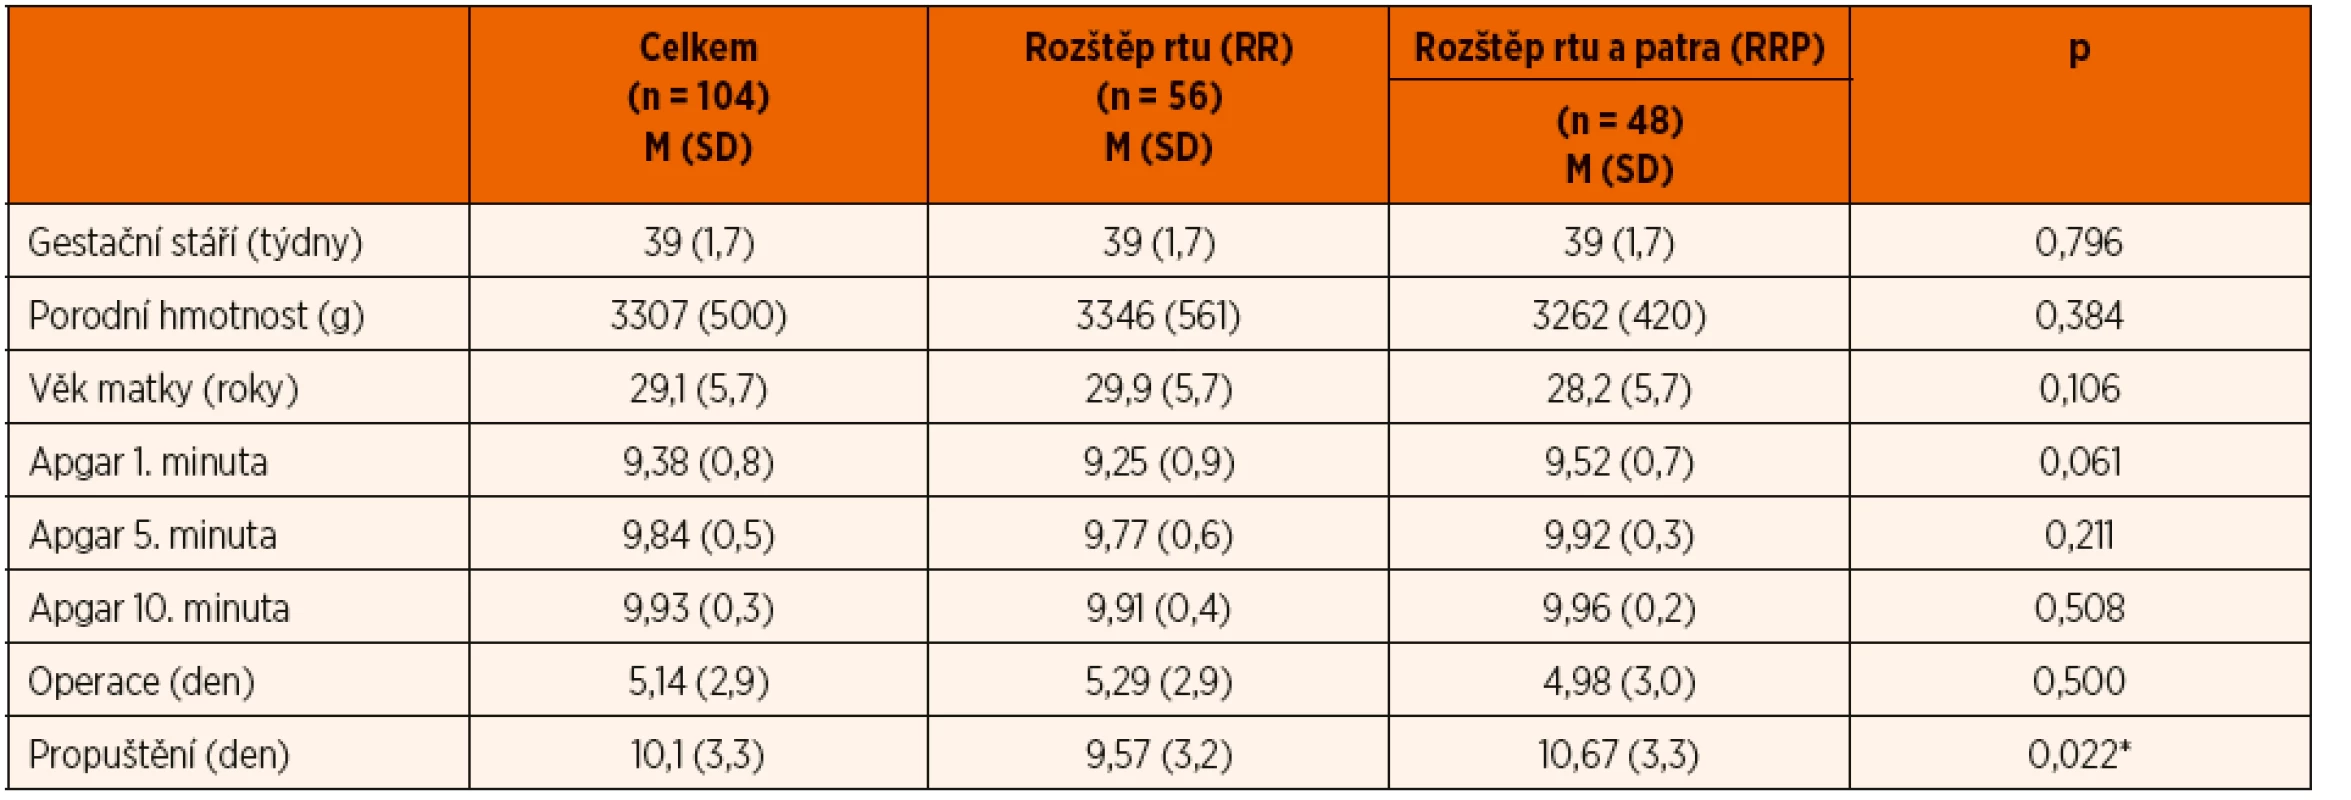 Srovnání demografických charakteristik skupiny pacientů s rozštěpem rtu (RR) a s rozštěpem rtu a patra (RRP).